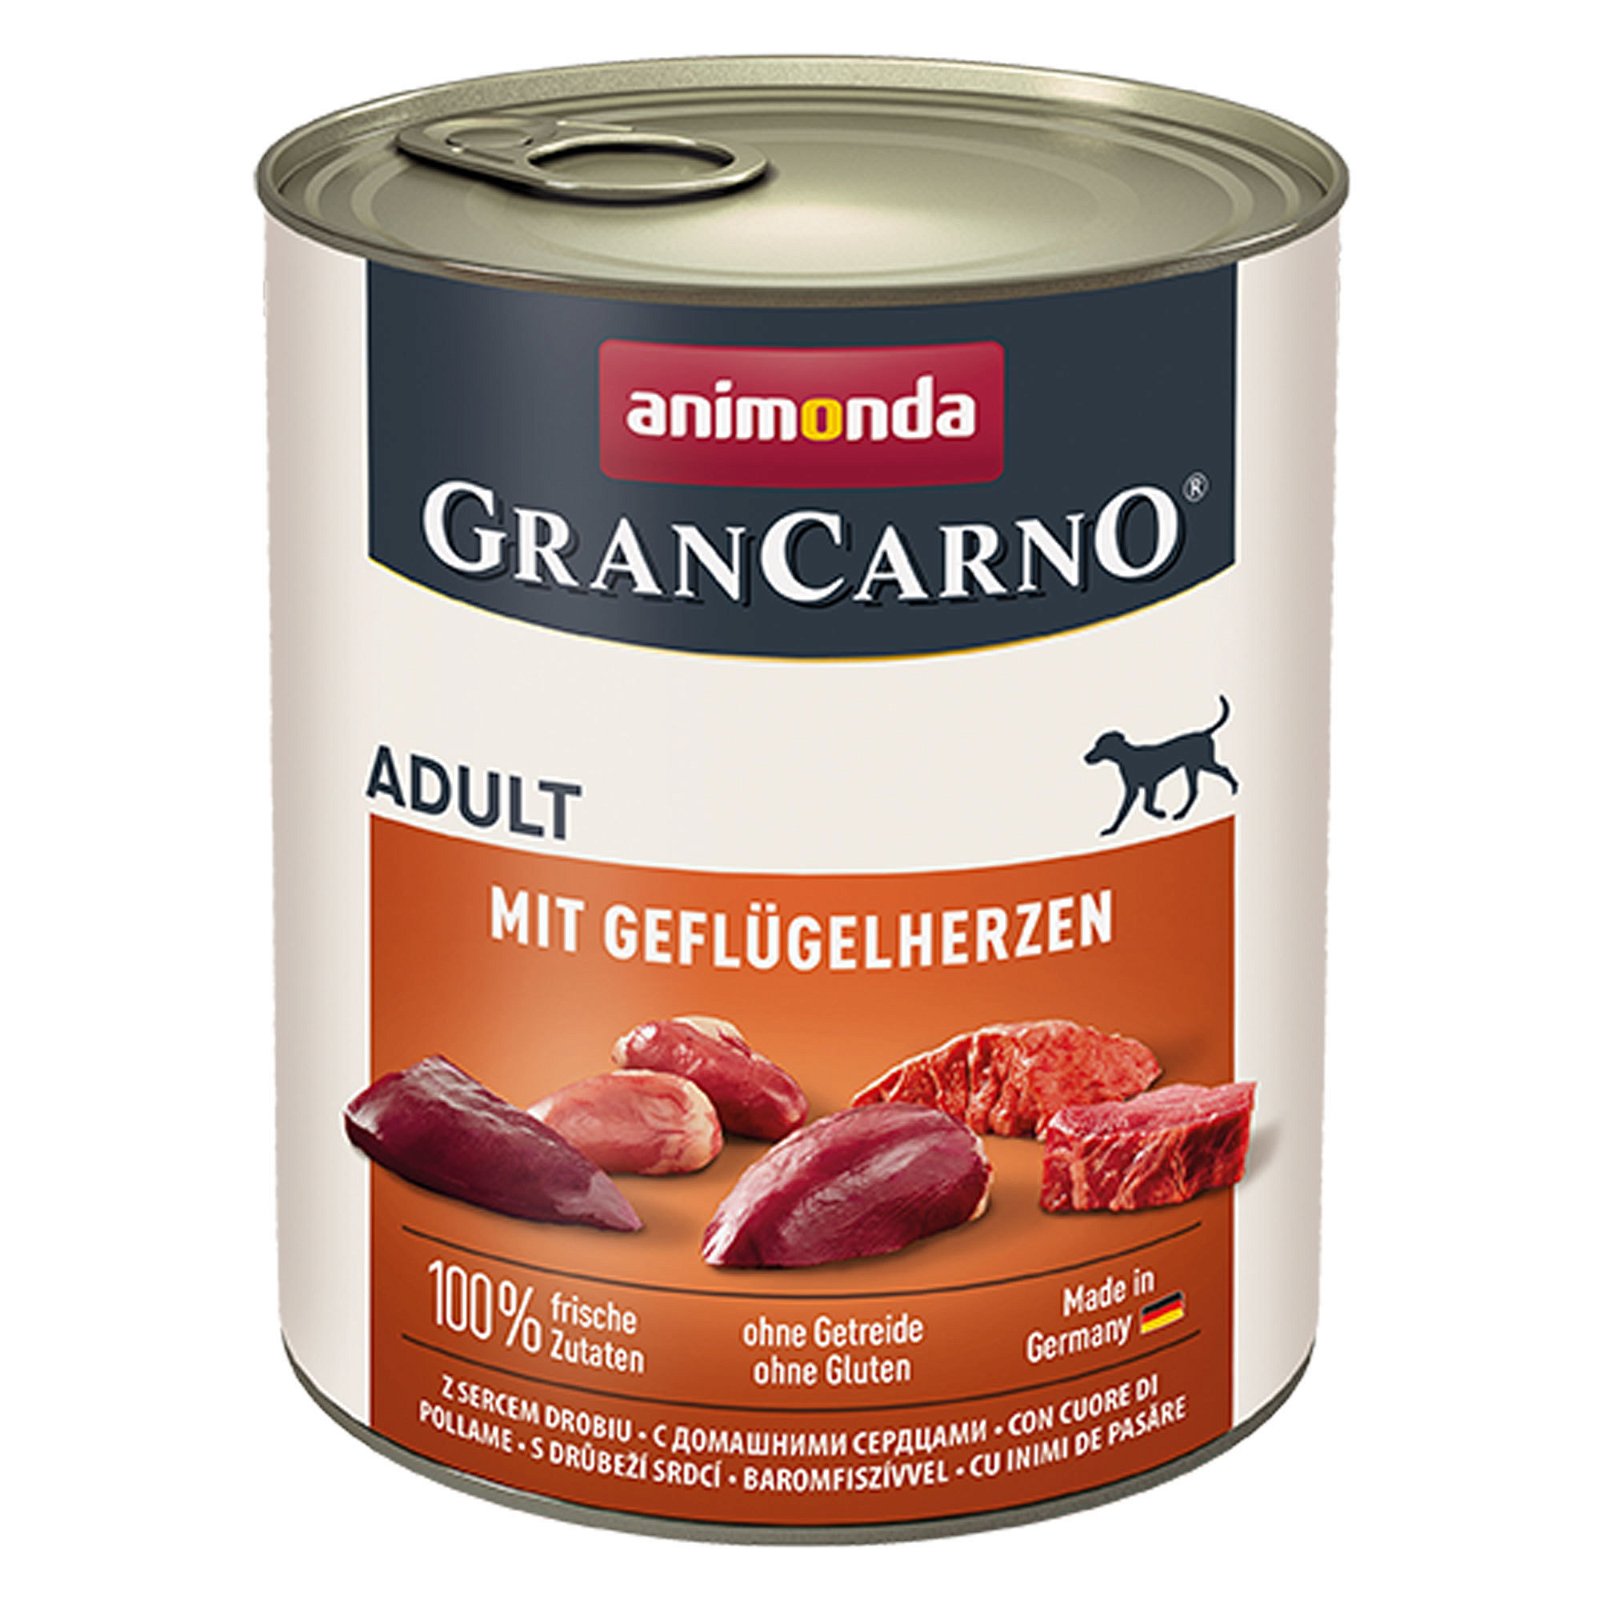 Hundefutter 'Animonda Cran Carno ® Adult', Geflügelherzen